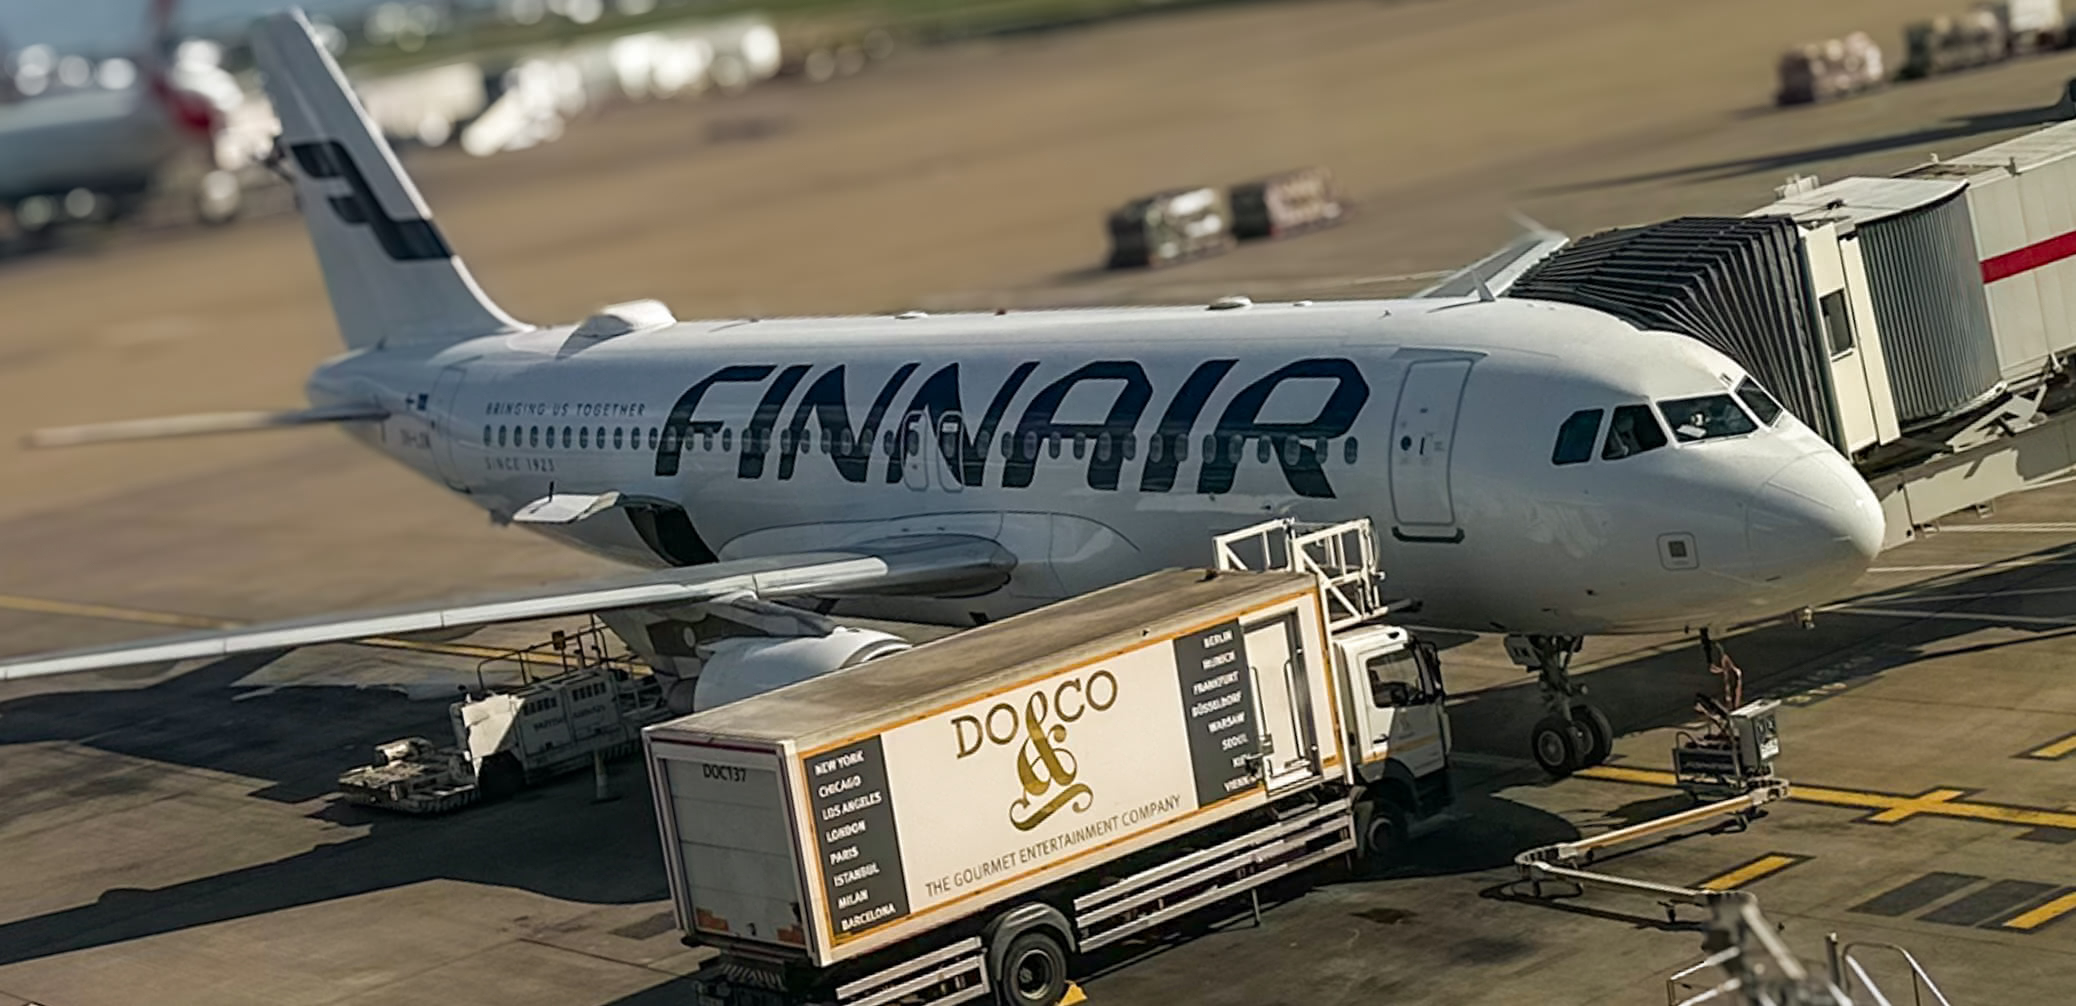 Review: Finnair A330 Business Class Helsinki to Phuket